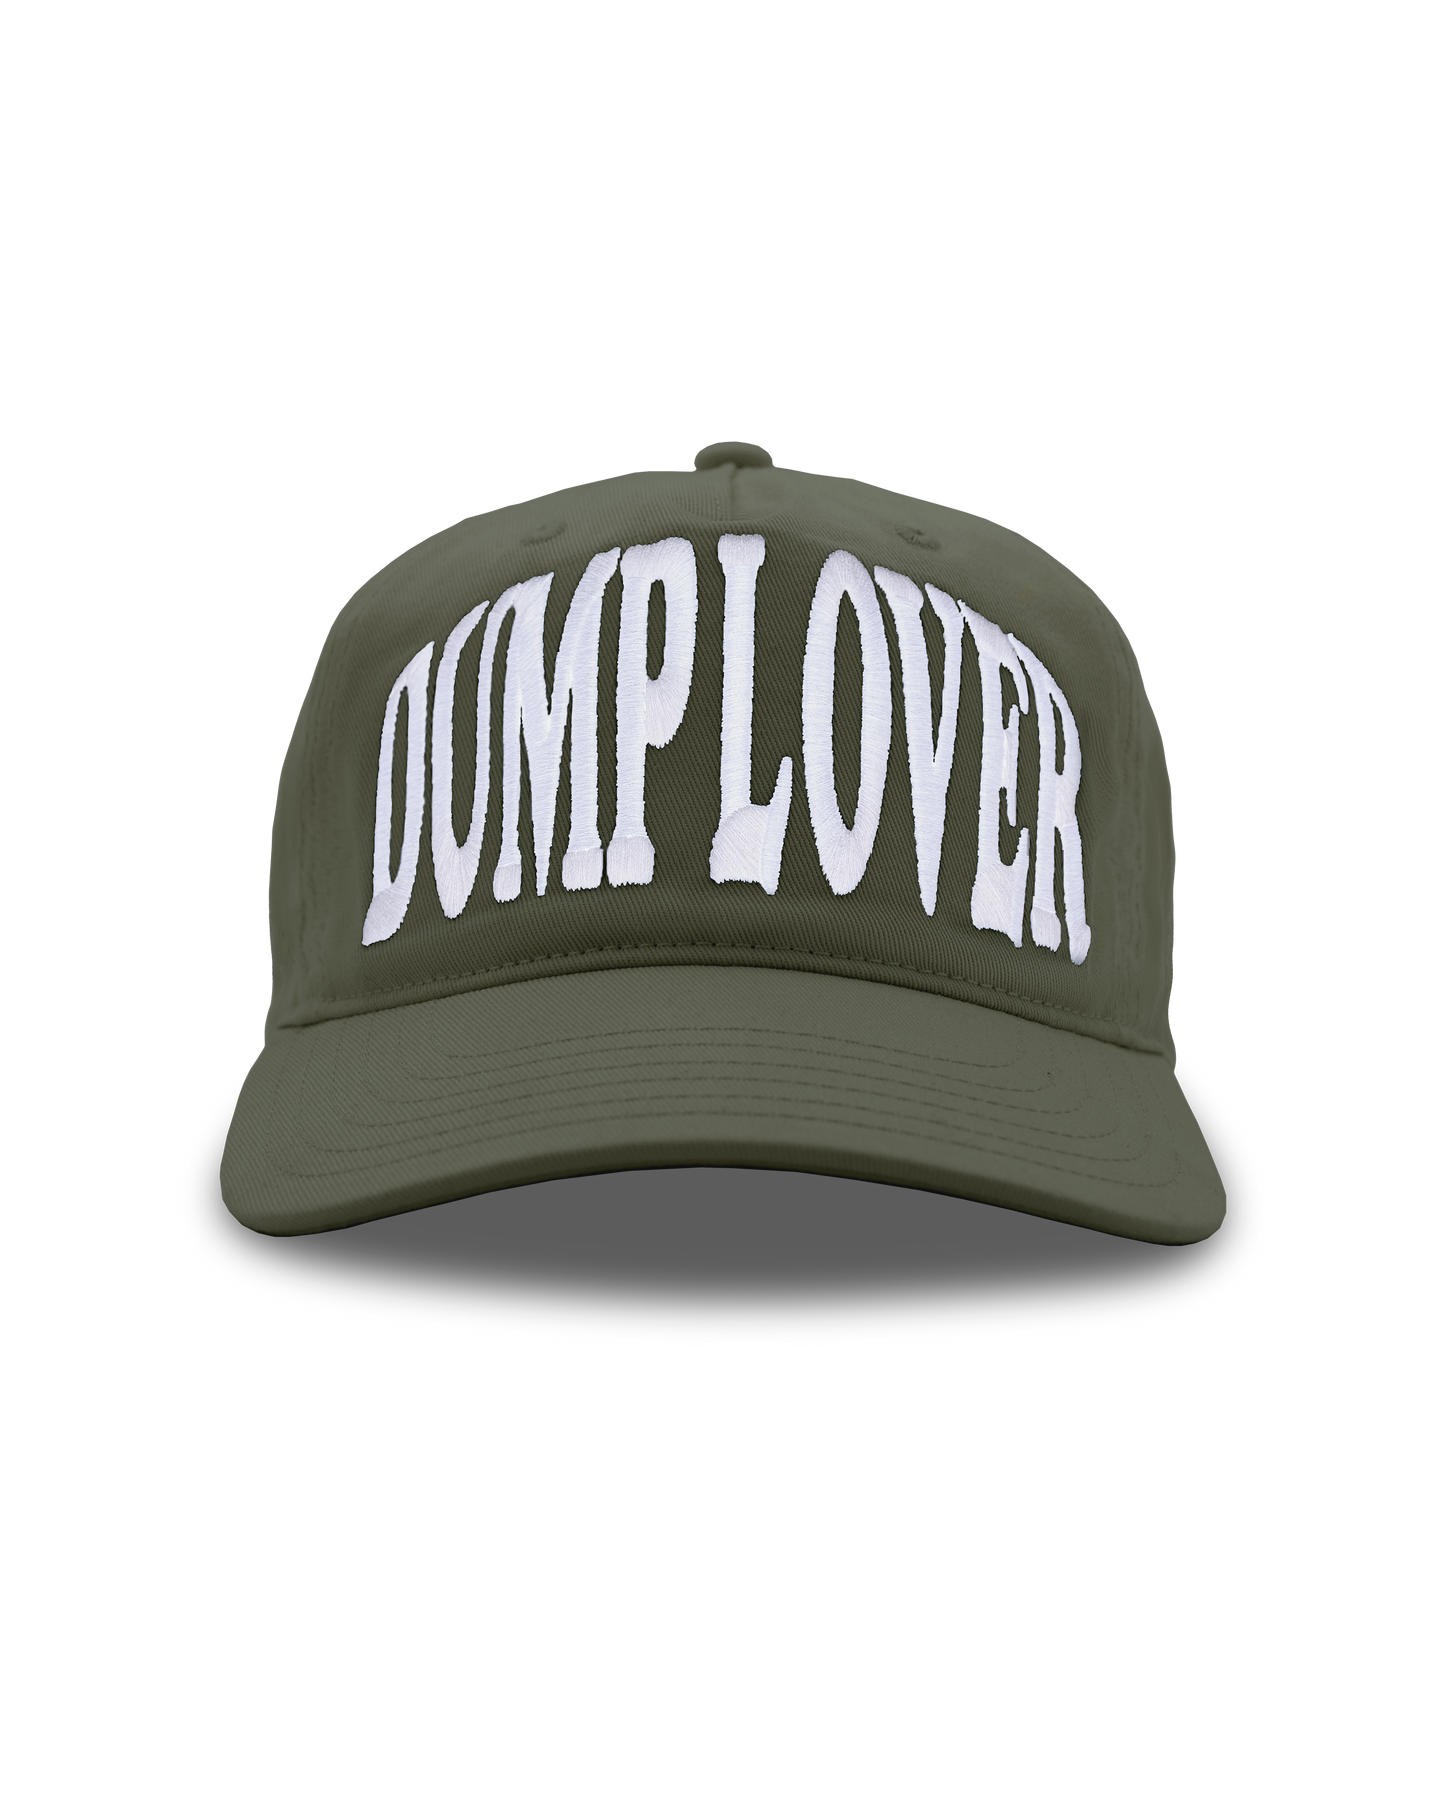 545 DUMP LOVER 6-PANEL HAT OLIVE